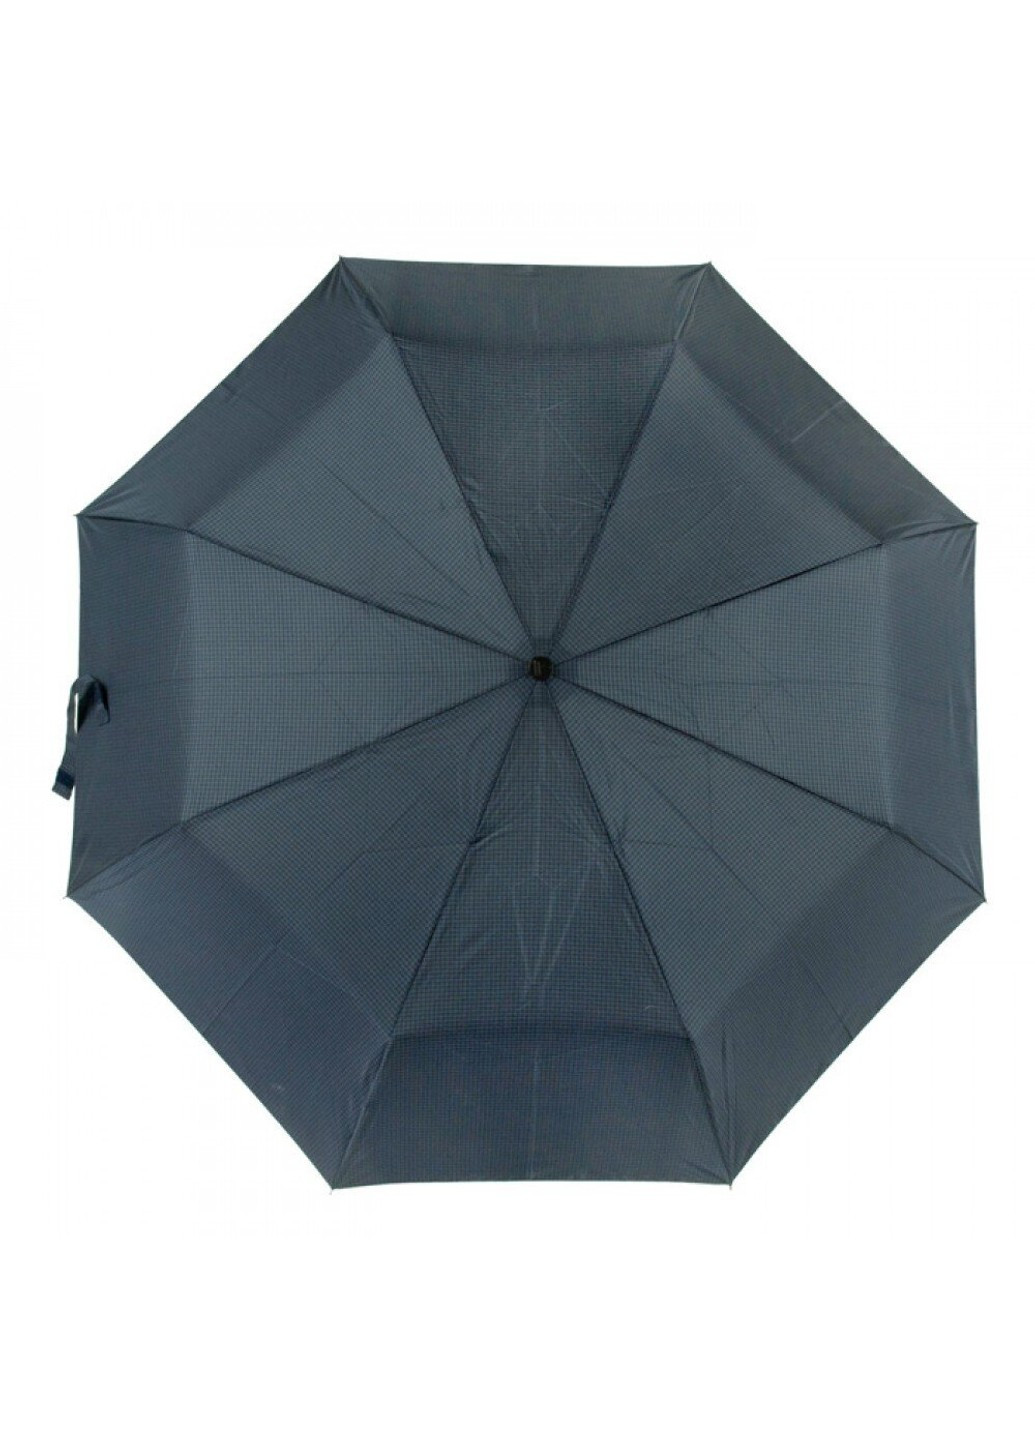 Механический мужской зонт G868 Hackney-2 Gingham (Синяя клетка) Fulton (262087174)